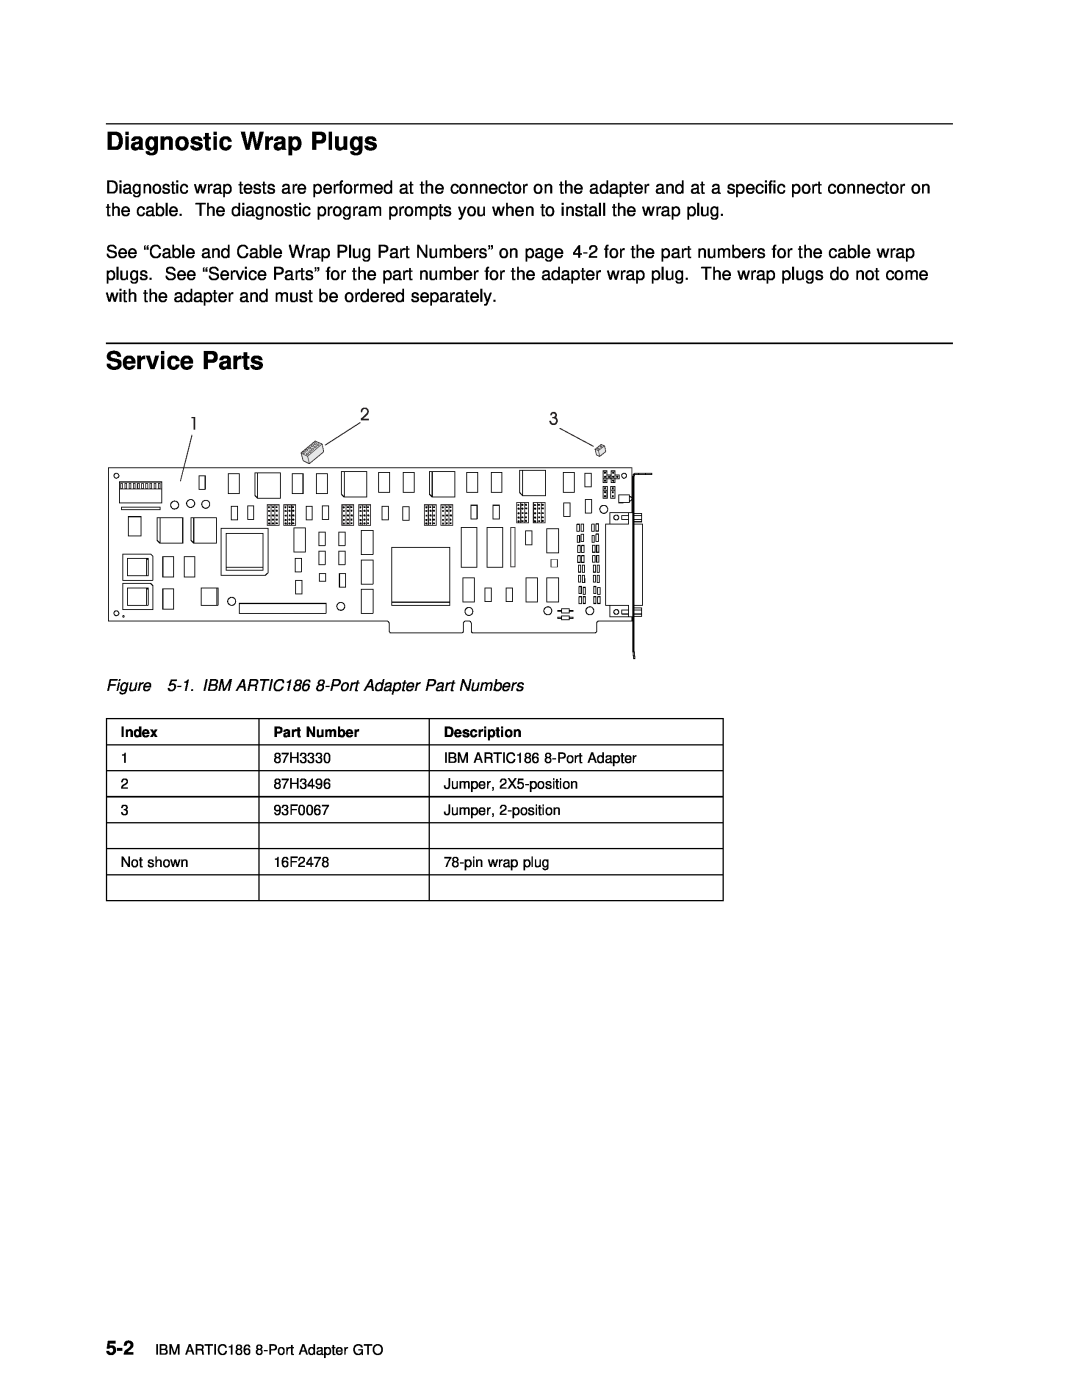 IBM ARTIC186 manual Service Parts, Diagnostic, Wrap 